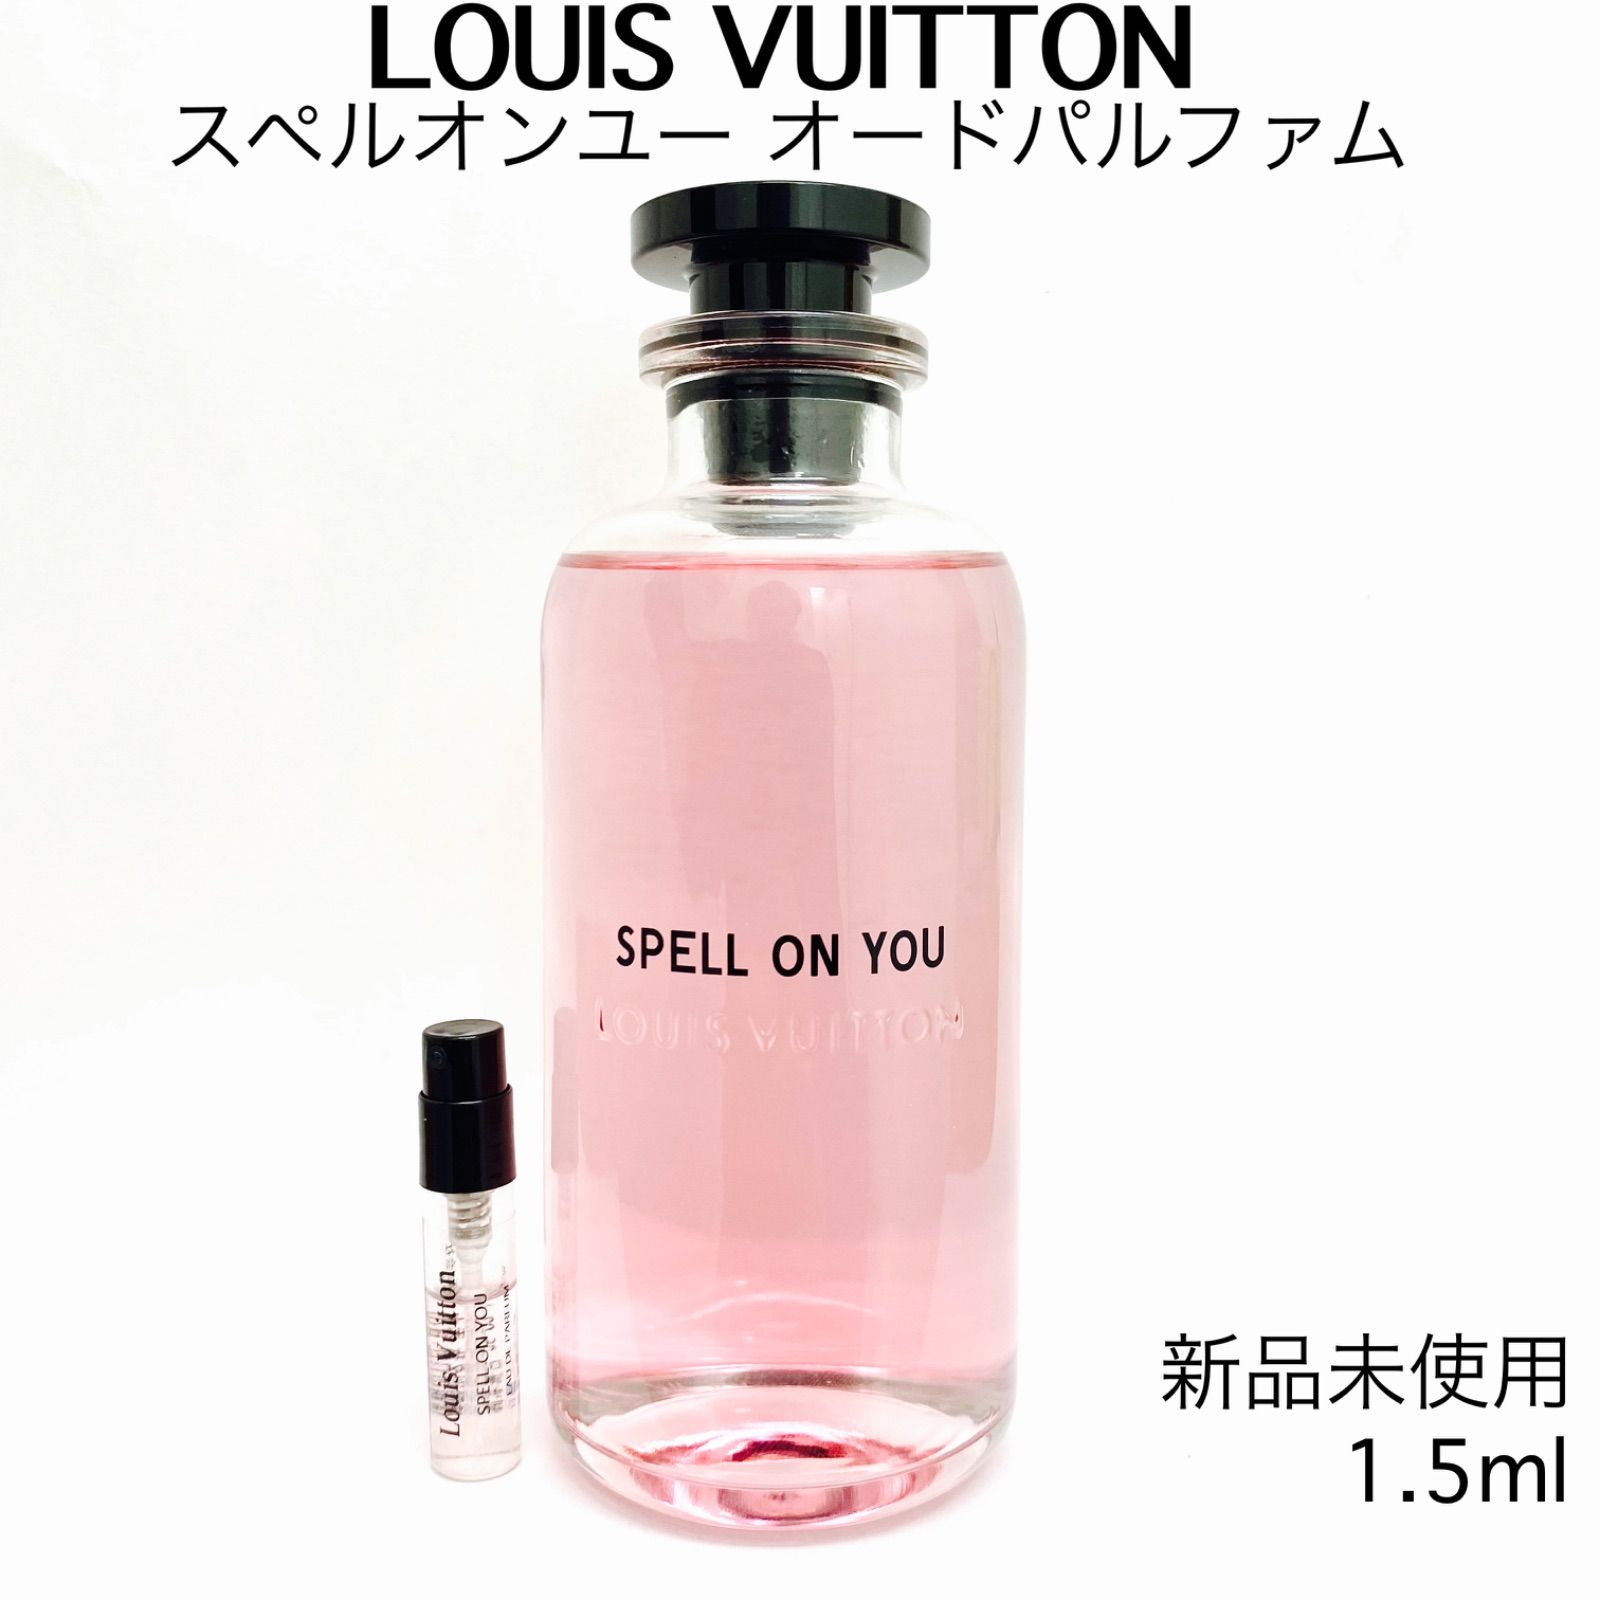 LOUISVUITTON ルイヴィトン スペルオンユー 香水 1.5ml - メルカリShops